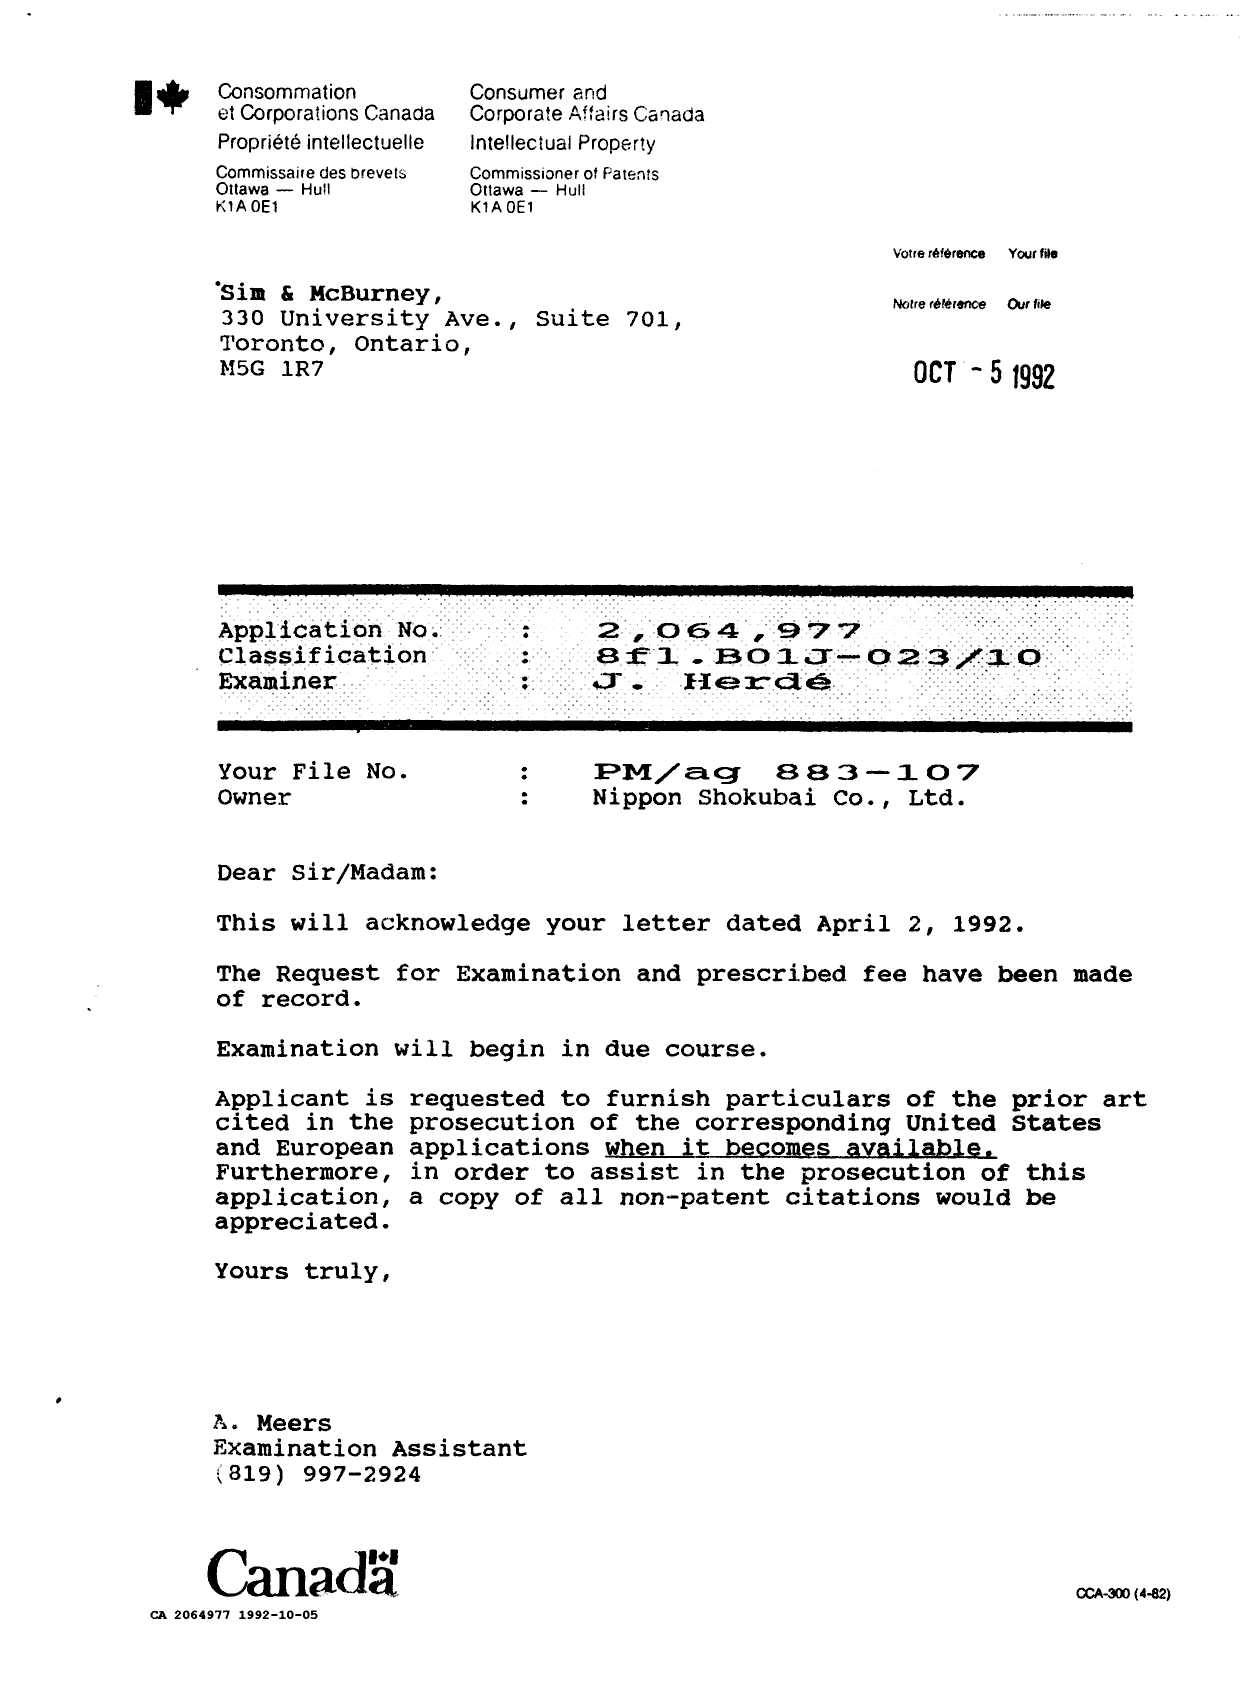 Document de brevet canadien 2064977. Lettre du bureau 19921005. Image 1 de 1